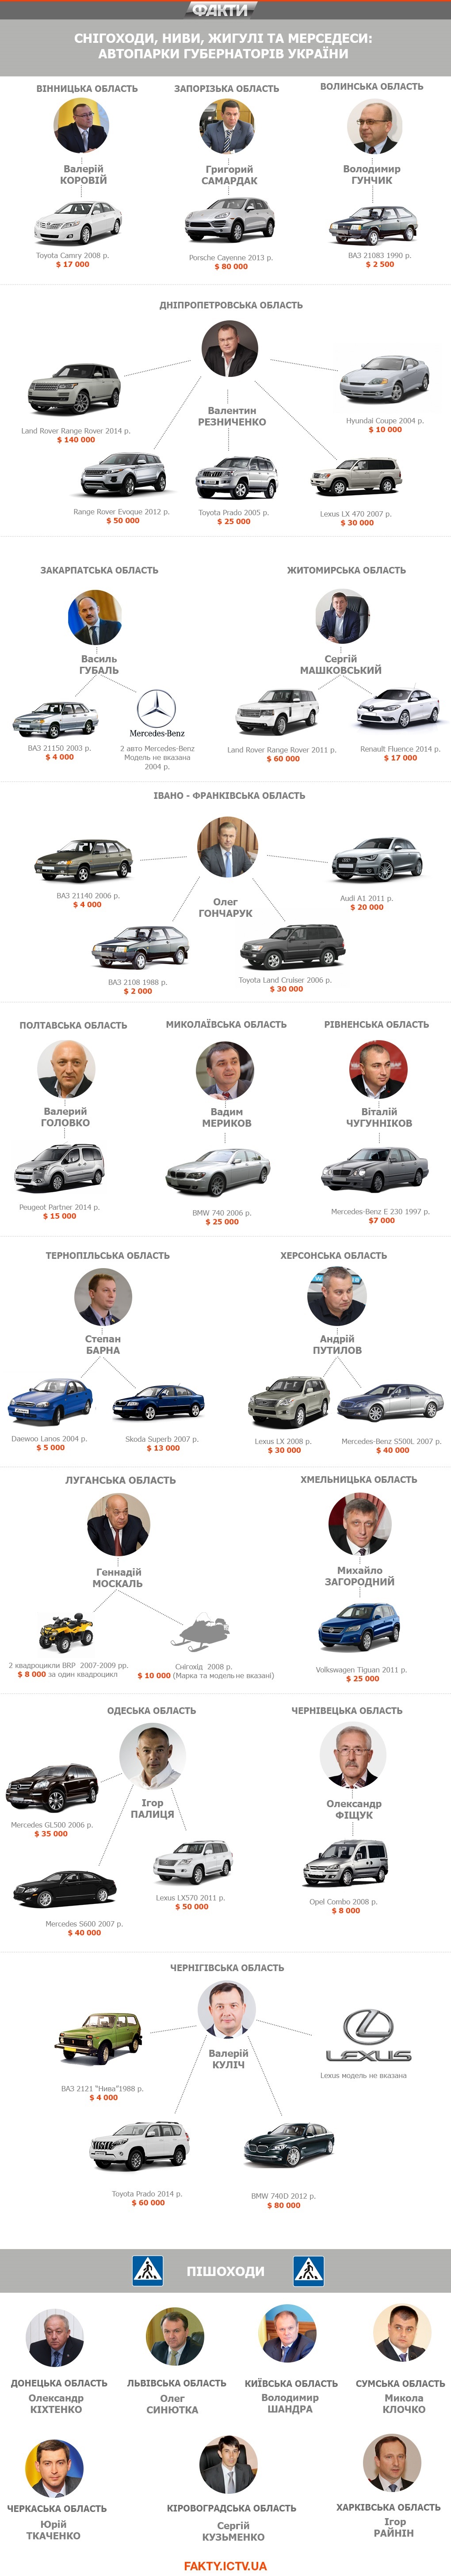 Автопарк губернаторов: 3 Range Rover, 7 пешеходов и снегоход Москаля (инфографика)